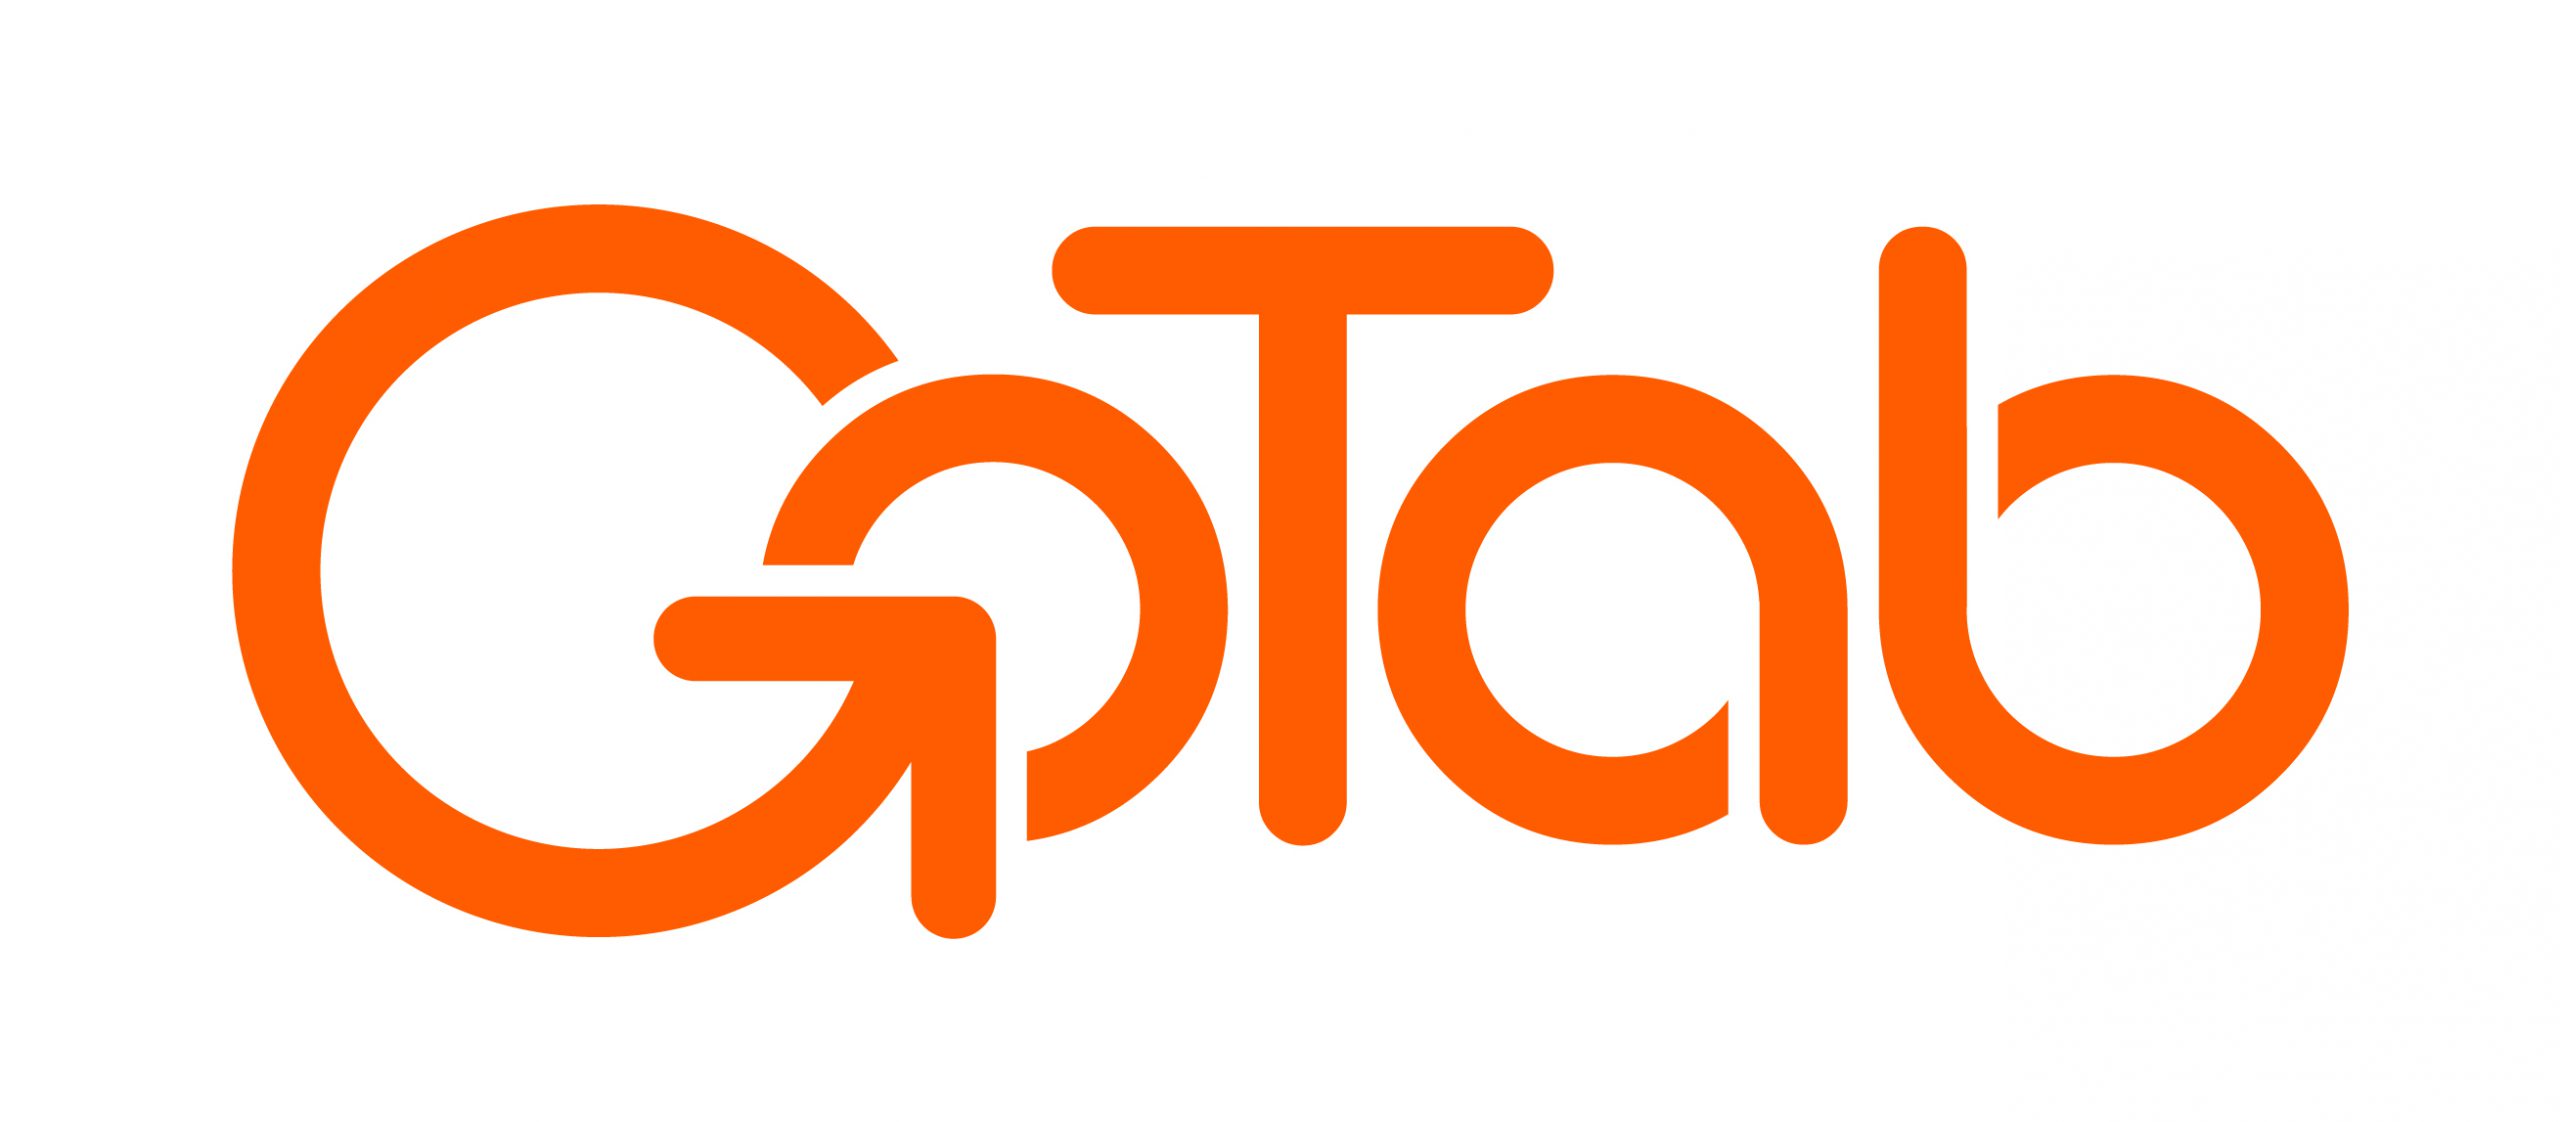 GoTab Logo - Orange